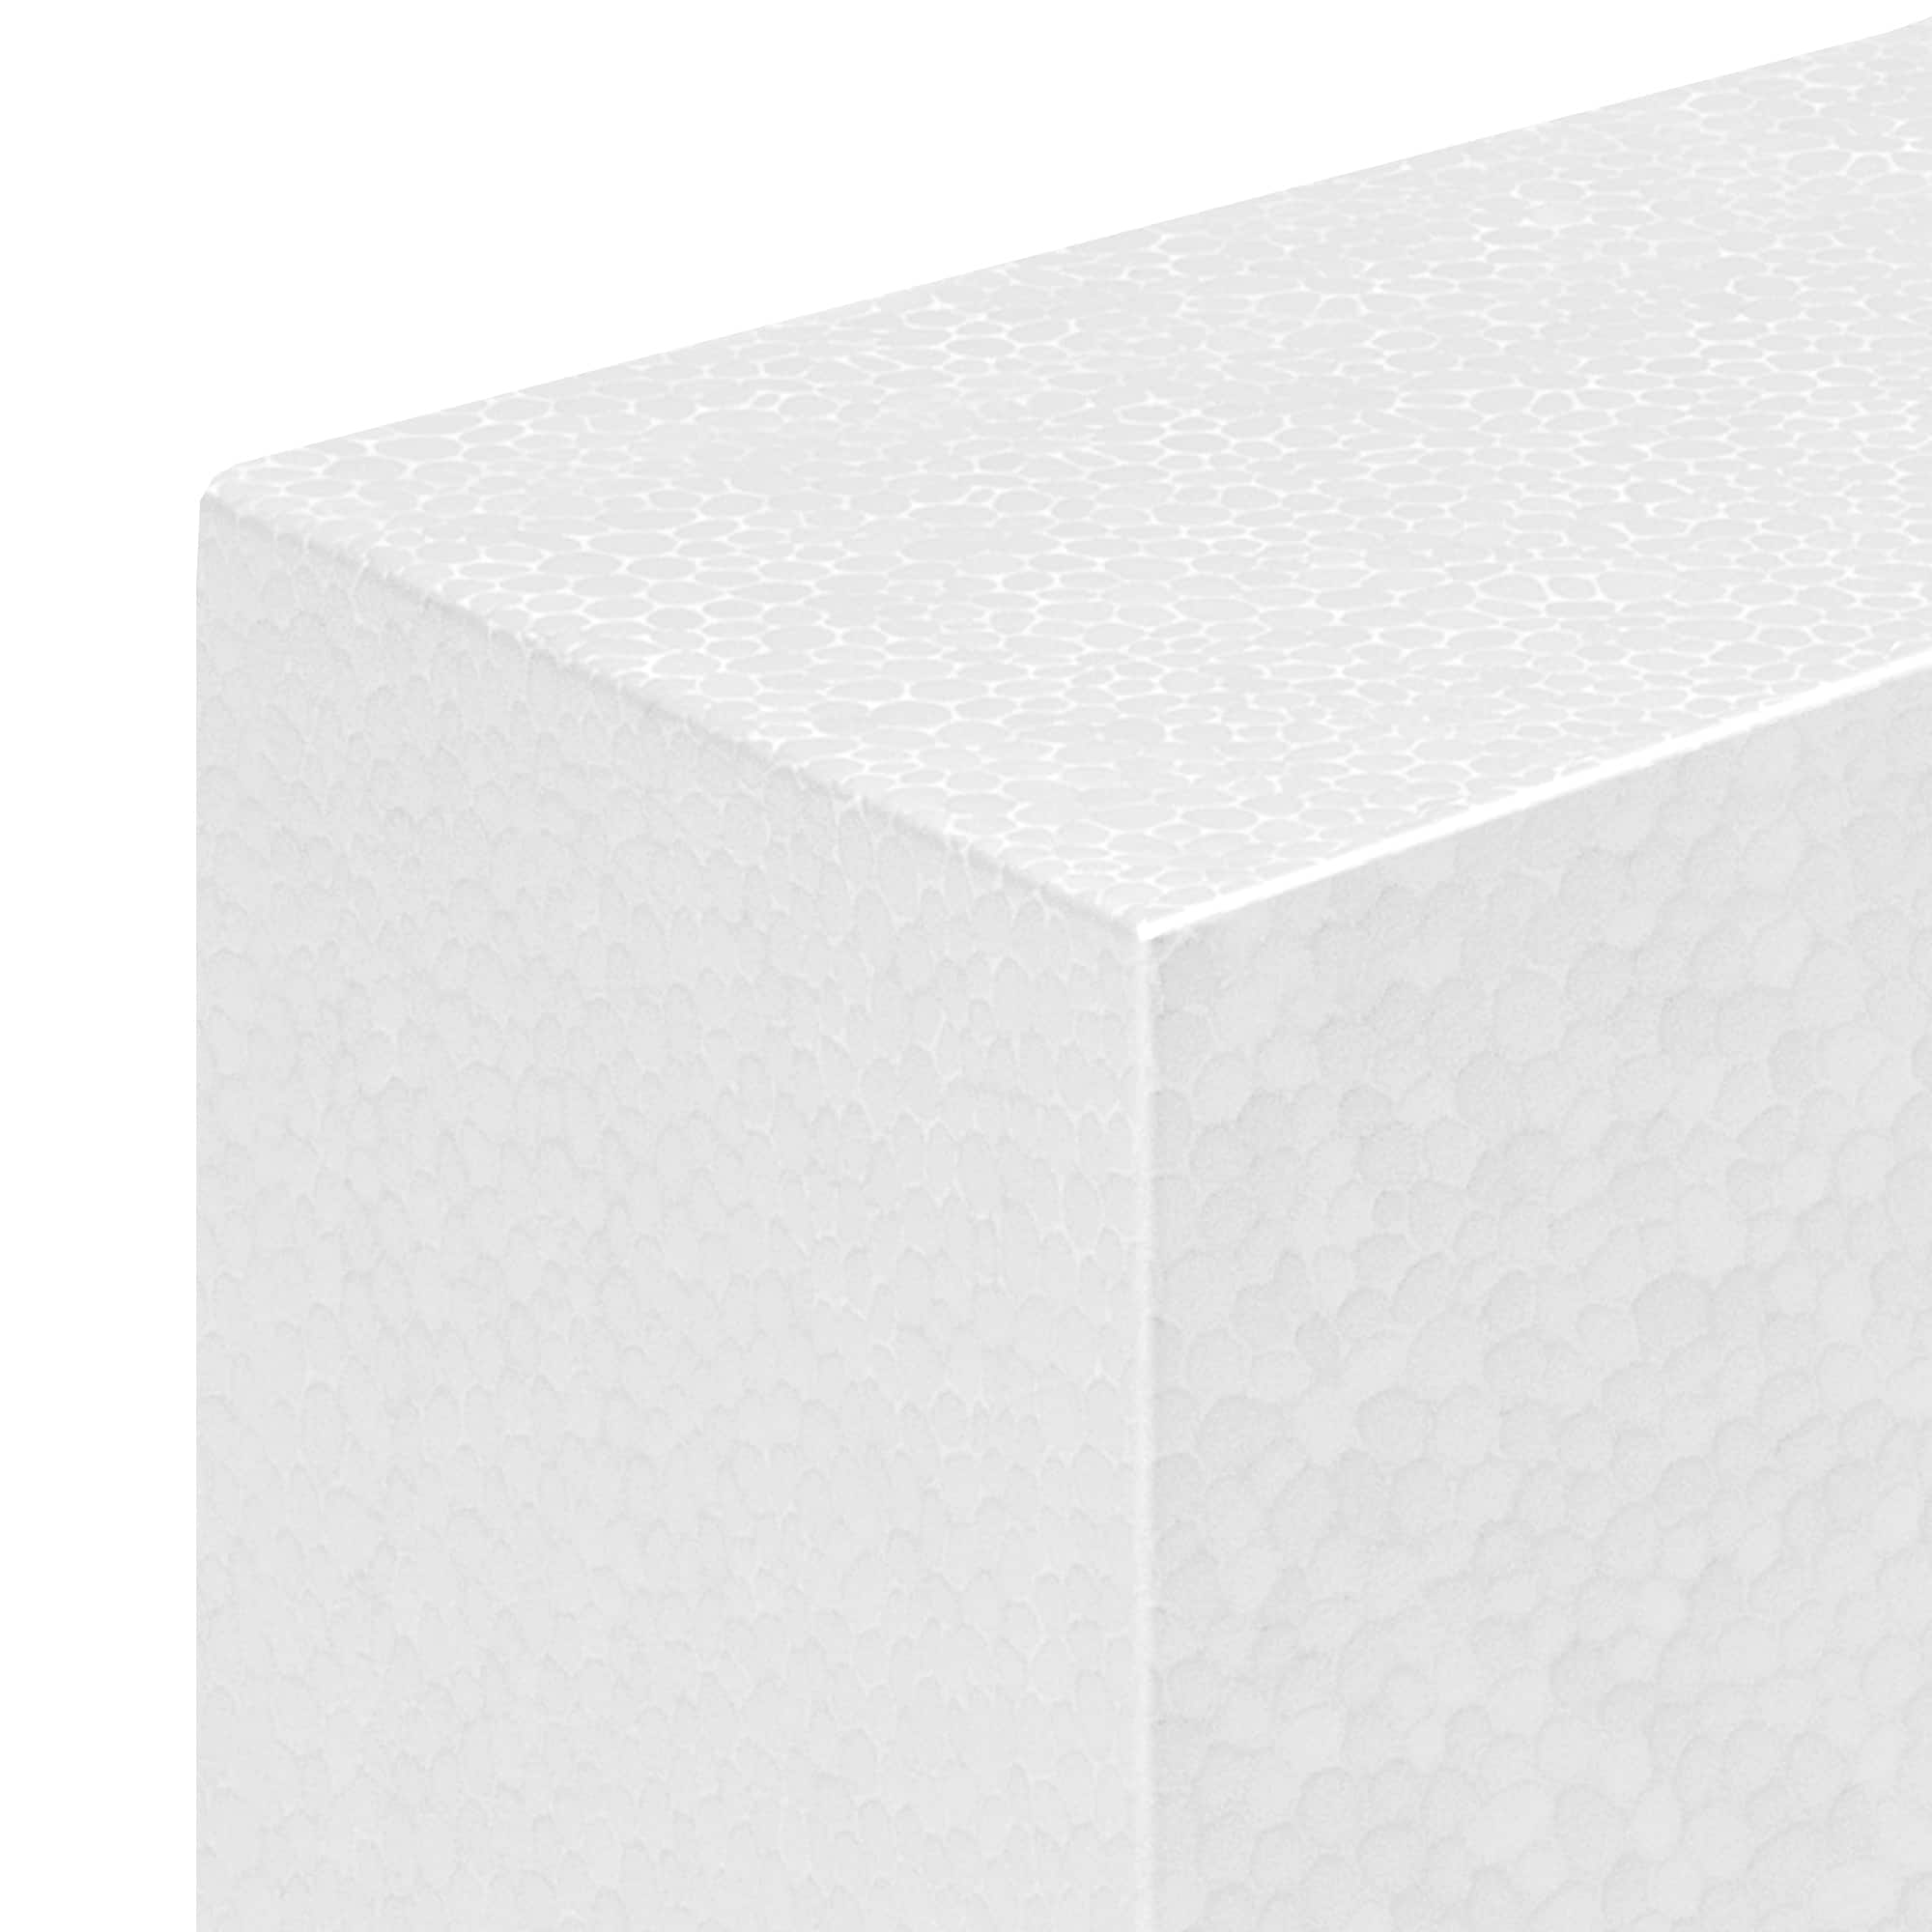 Make It: Fun® STYROFOAM white block, 3 x 3 x 3.